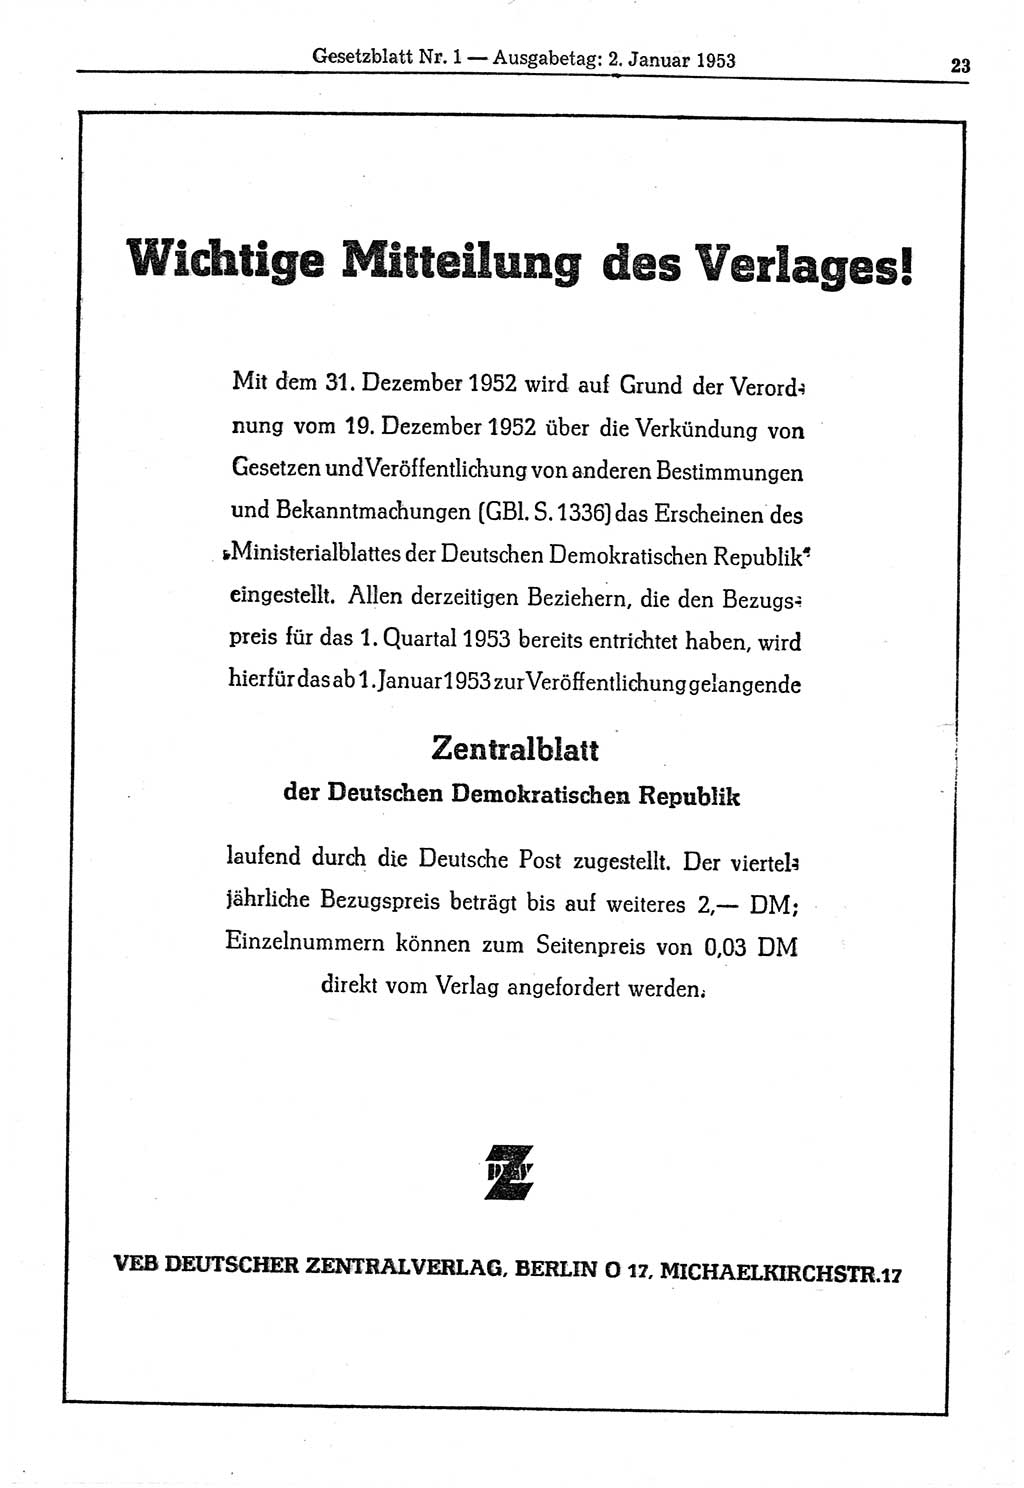 Gesetzblatt (GBl.) der Deutschen Demokratischen Republik (DDR) 1953, Seite 23 (GBl. DDR 1953, S. 23)